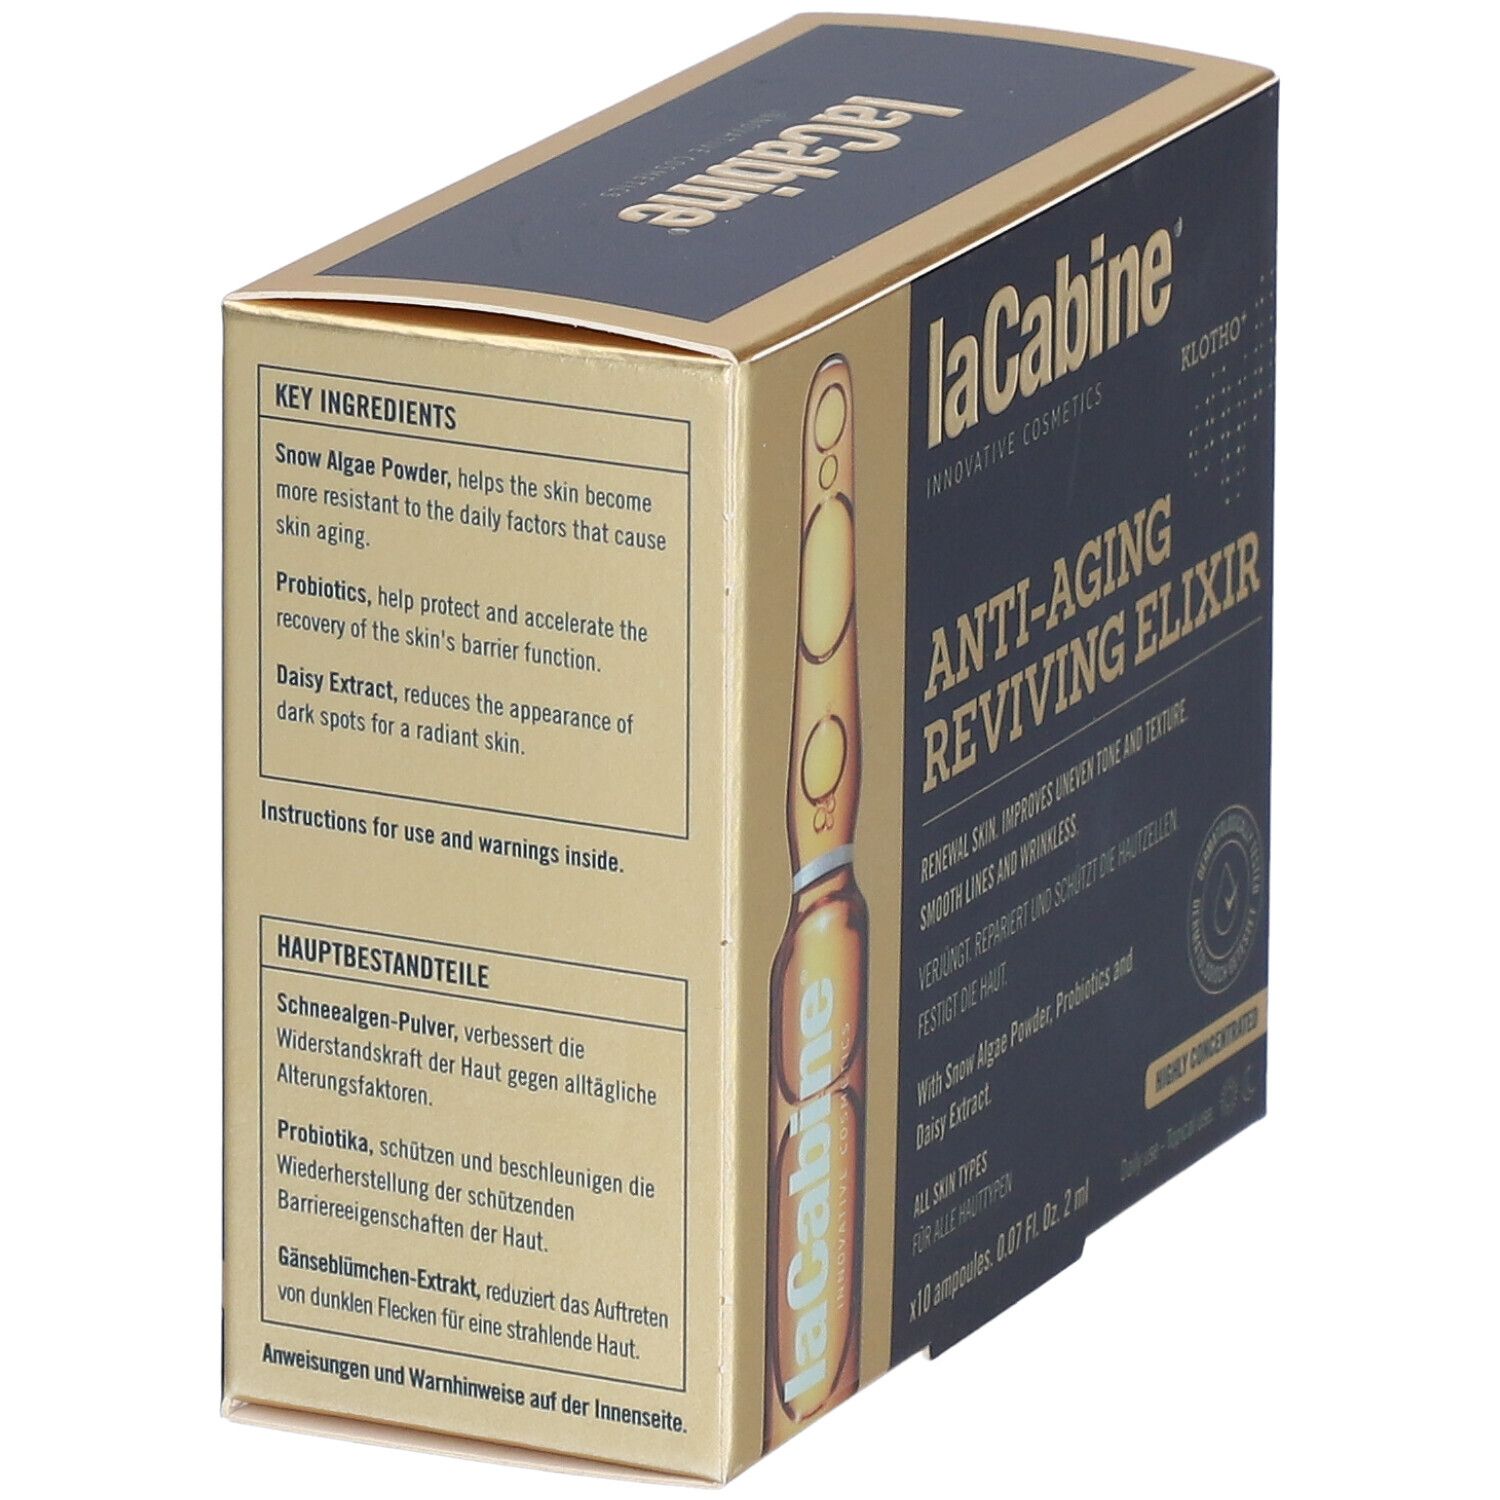 LaCabine® Anti-Aging Reviving Elixier